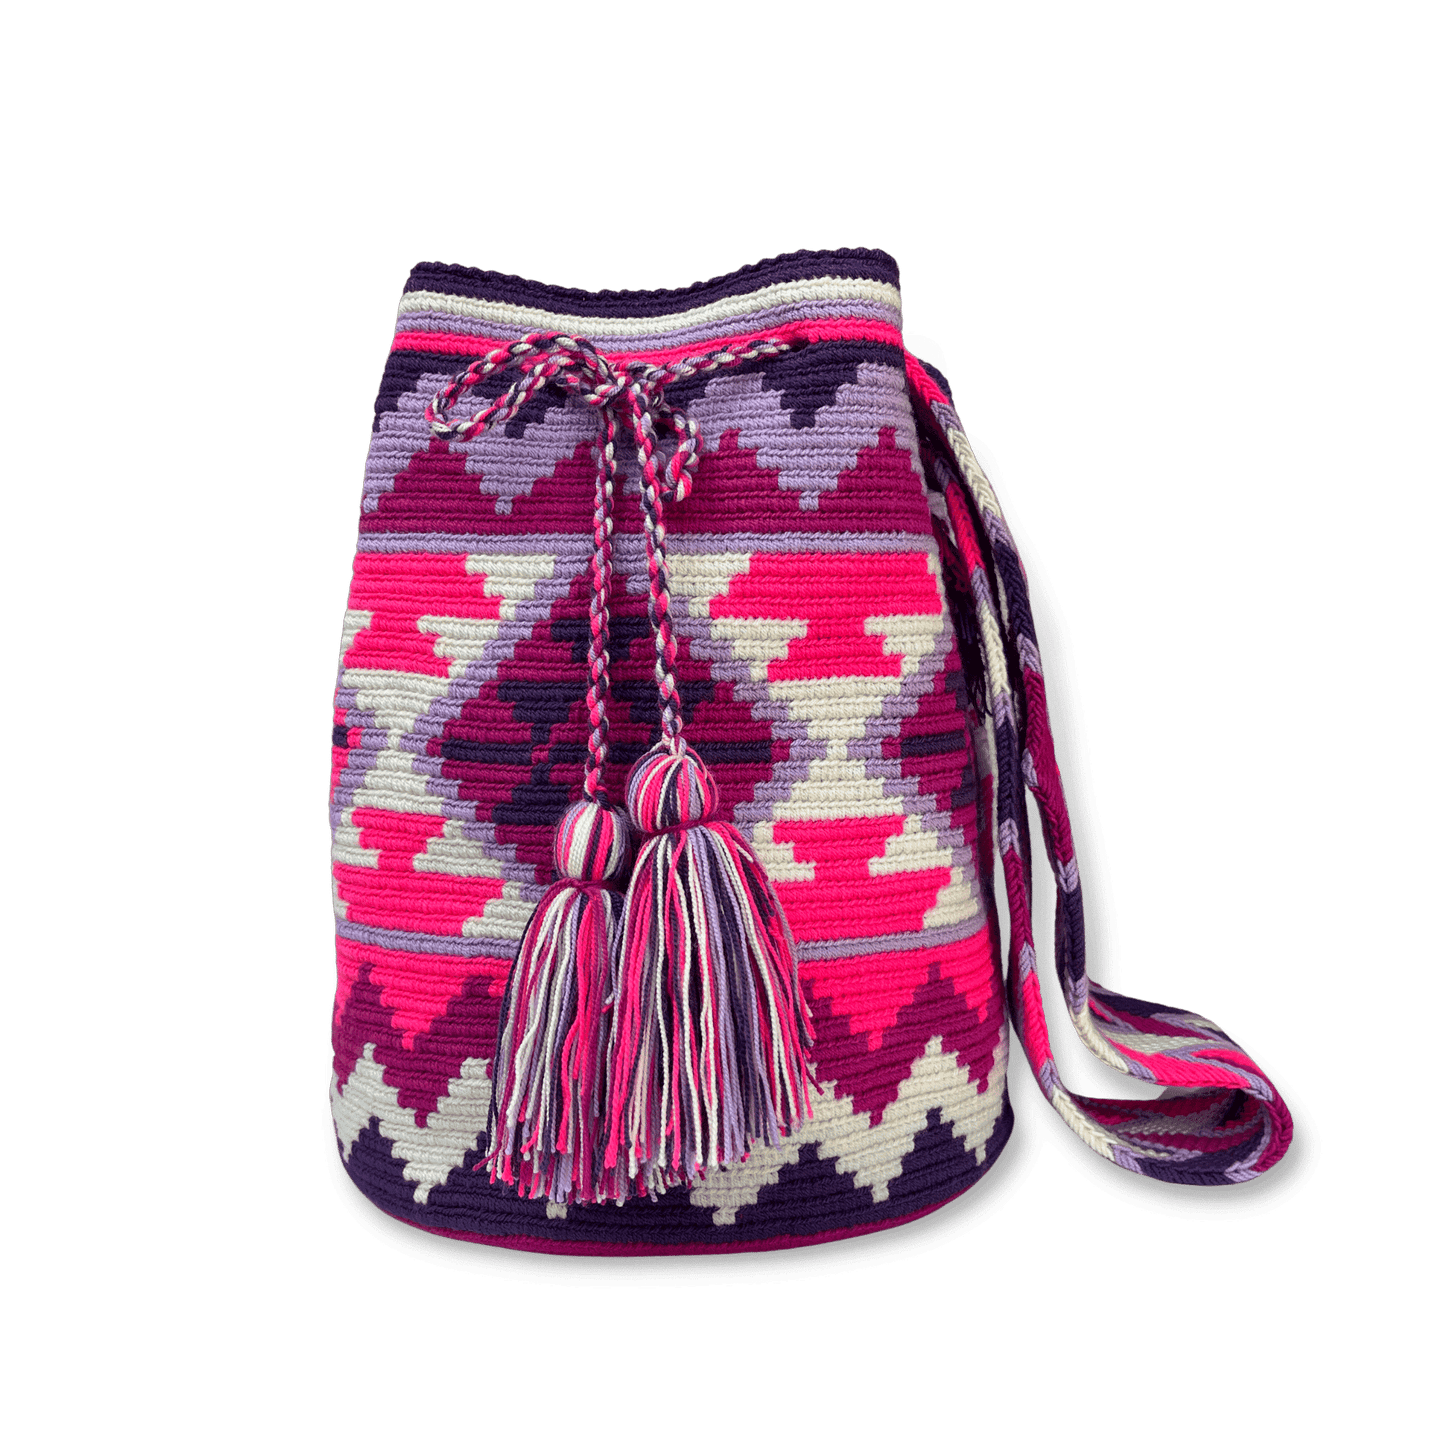 Bolso wayuu para mujer colores fucsia, blanco y morados